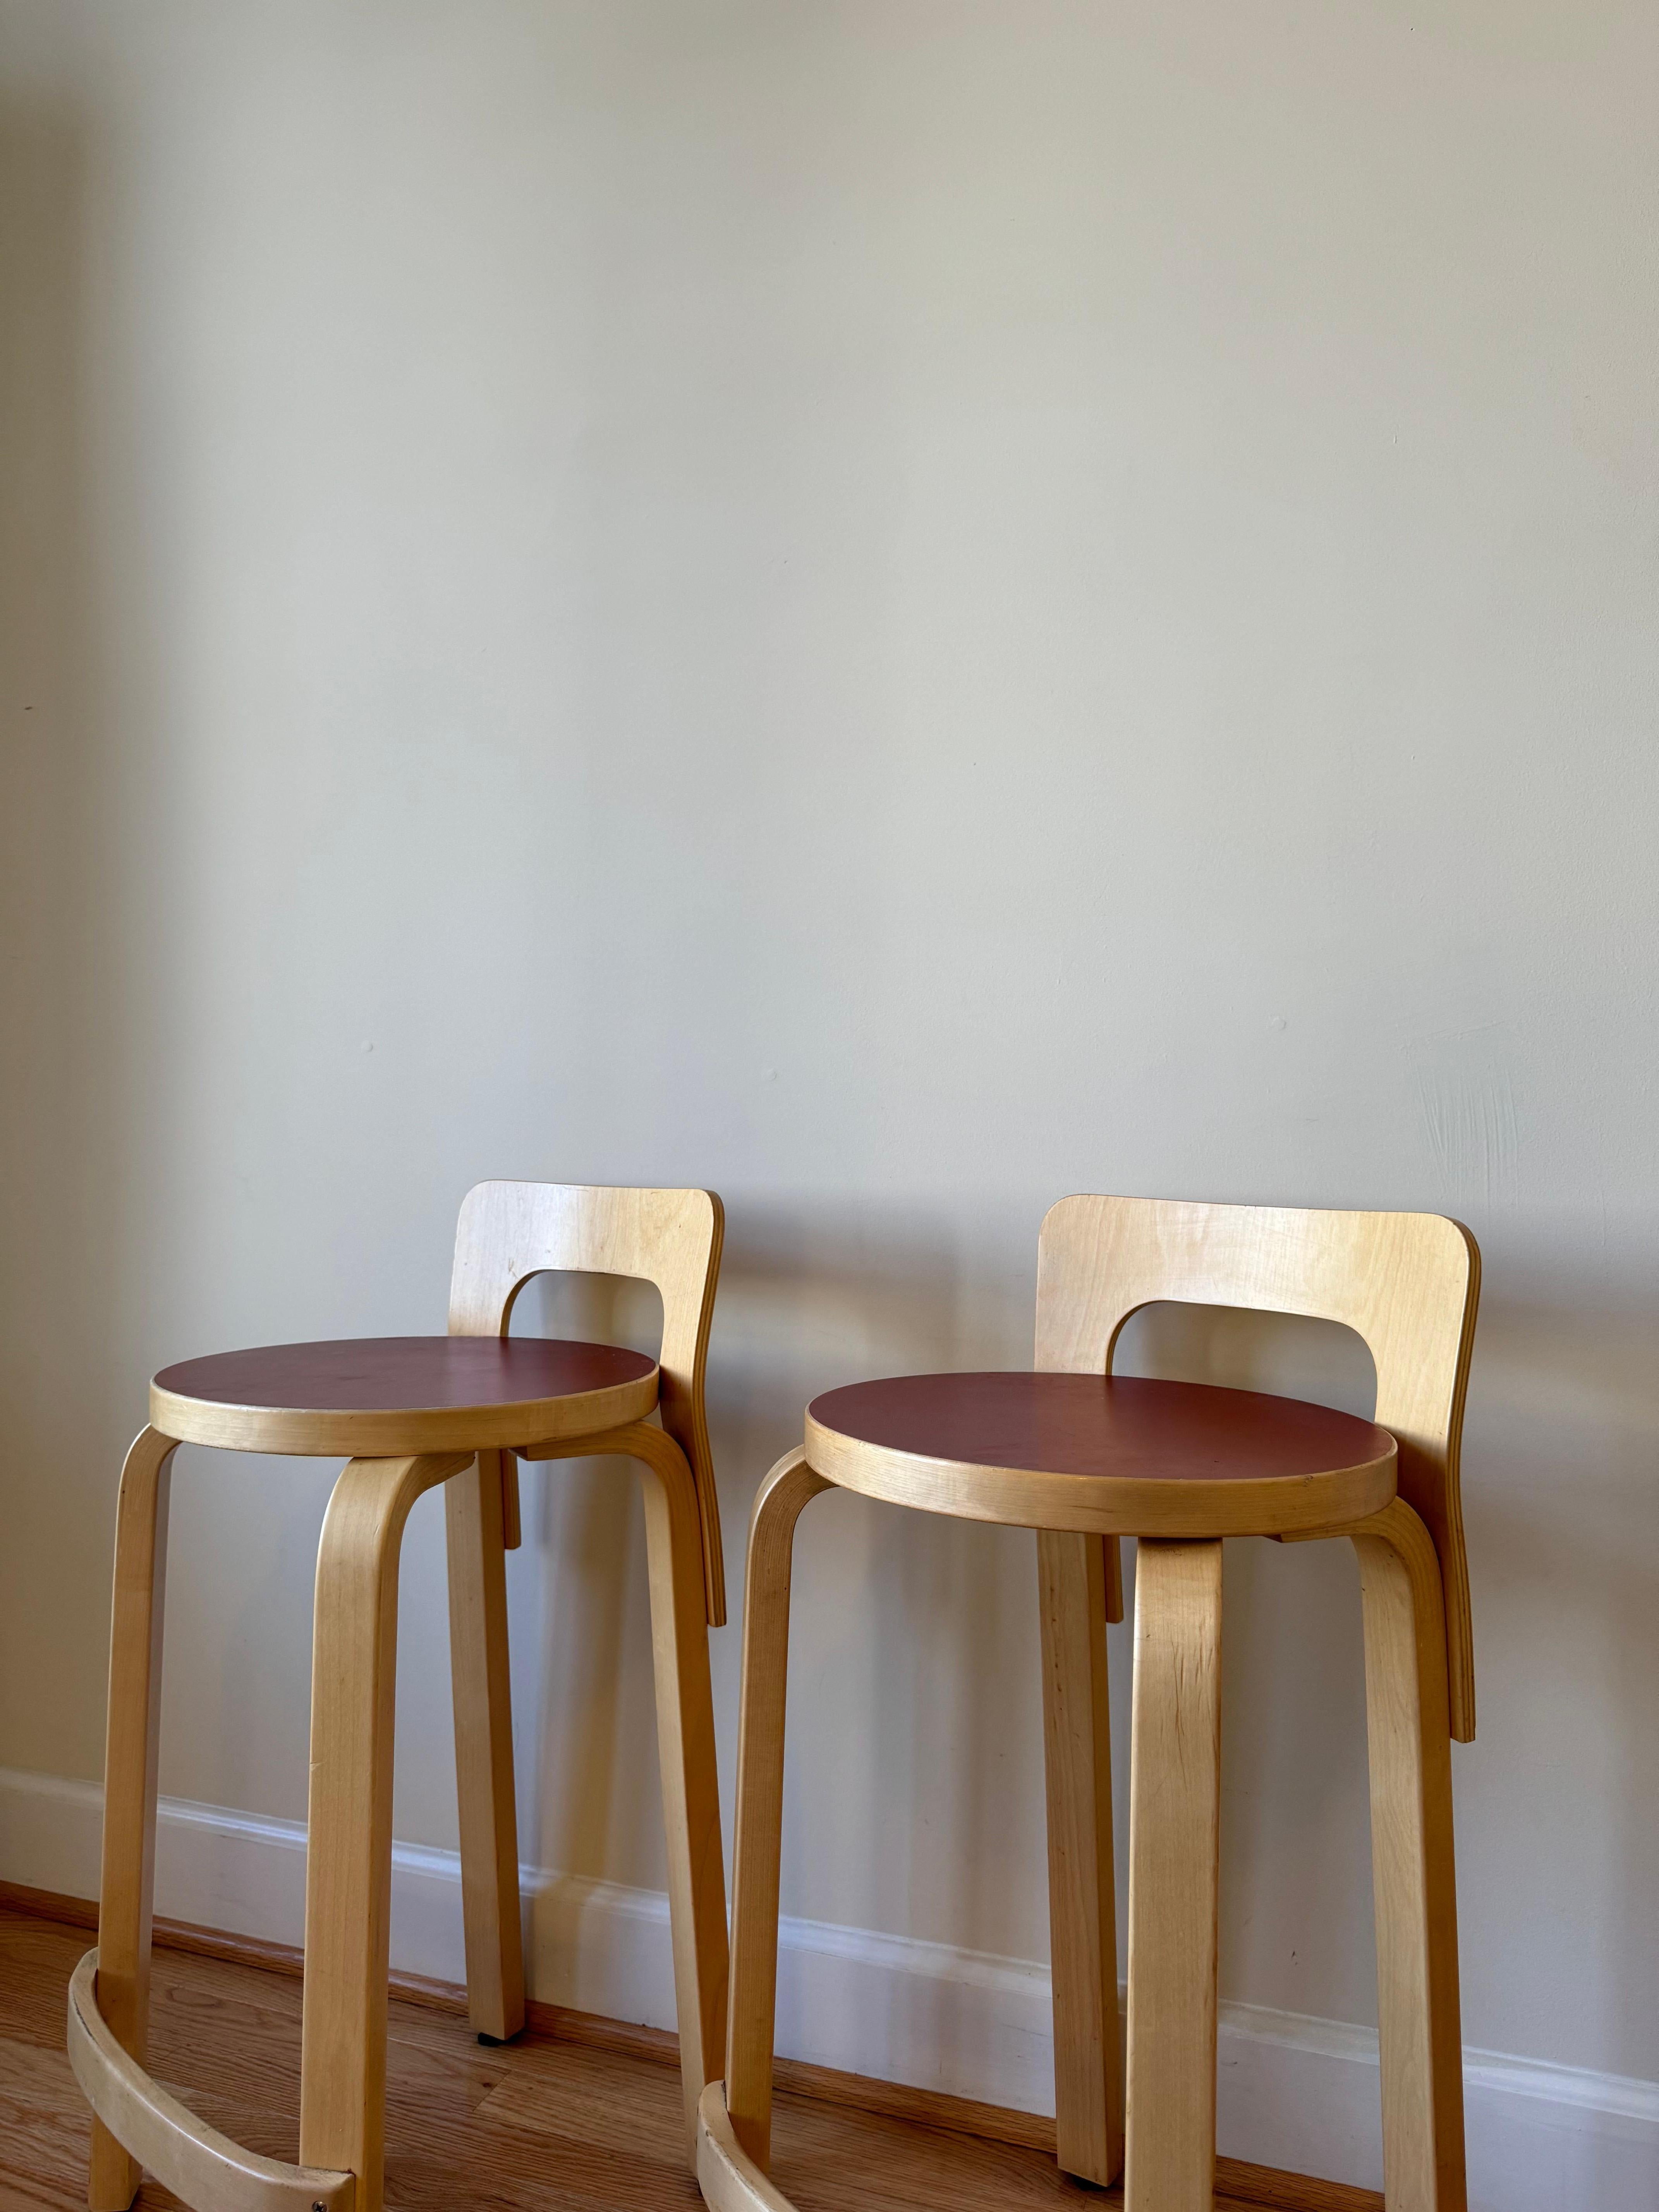 High Chair K65 von Alvar Aalto für Artek (Sitz aus rotem Linoleum) (Finnisch)